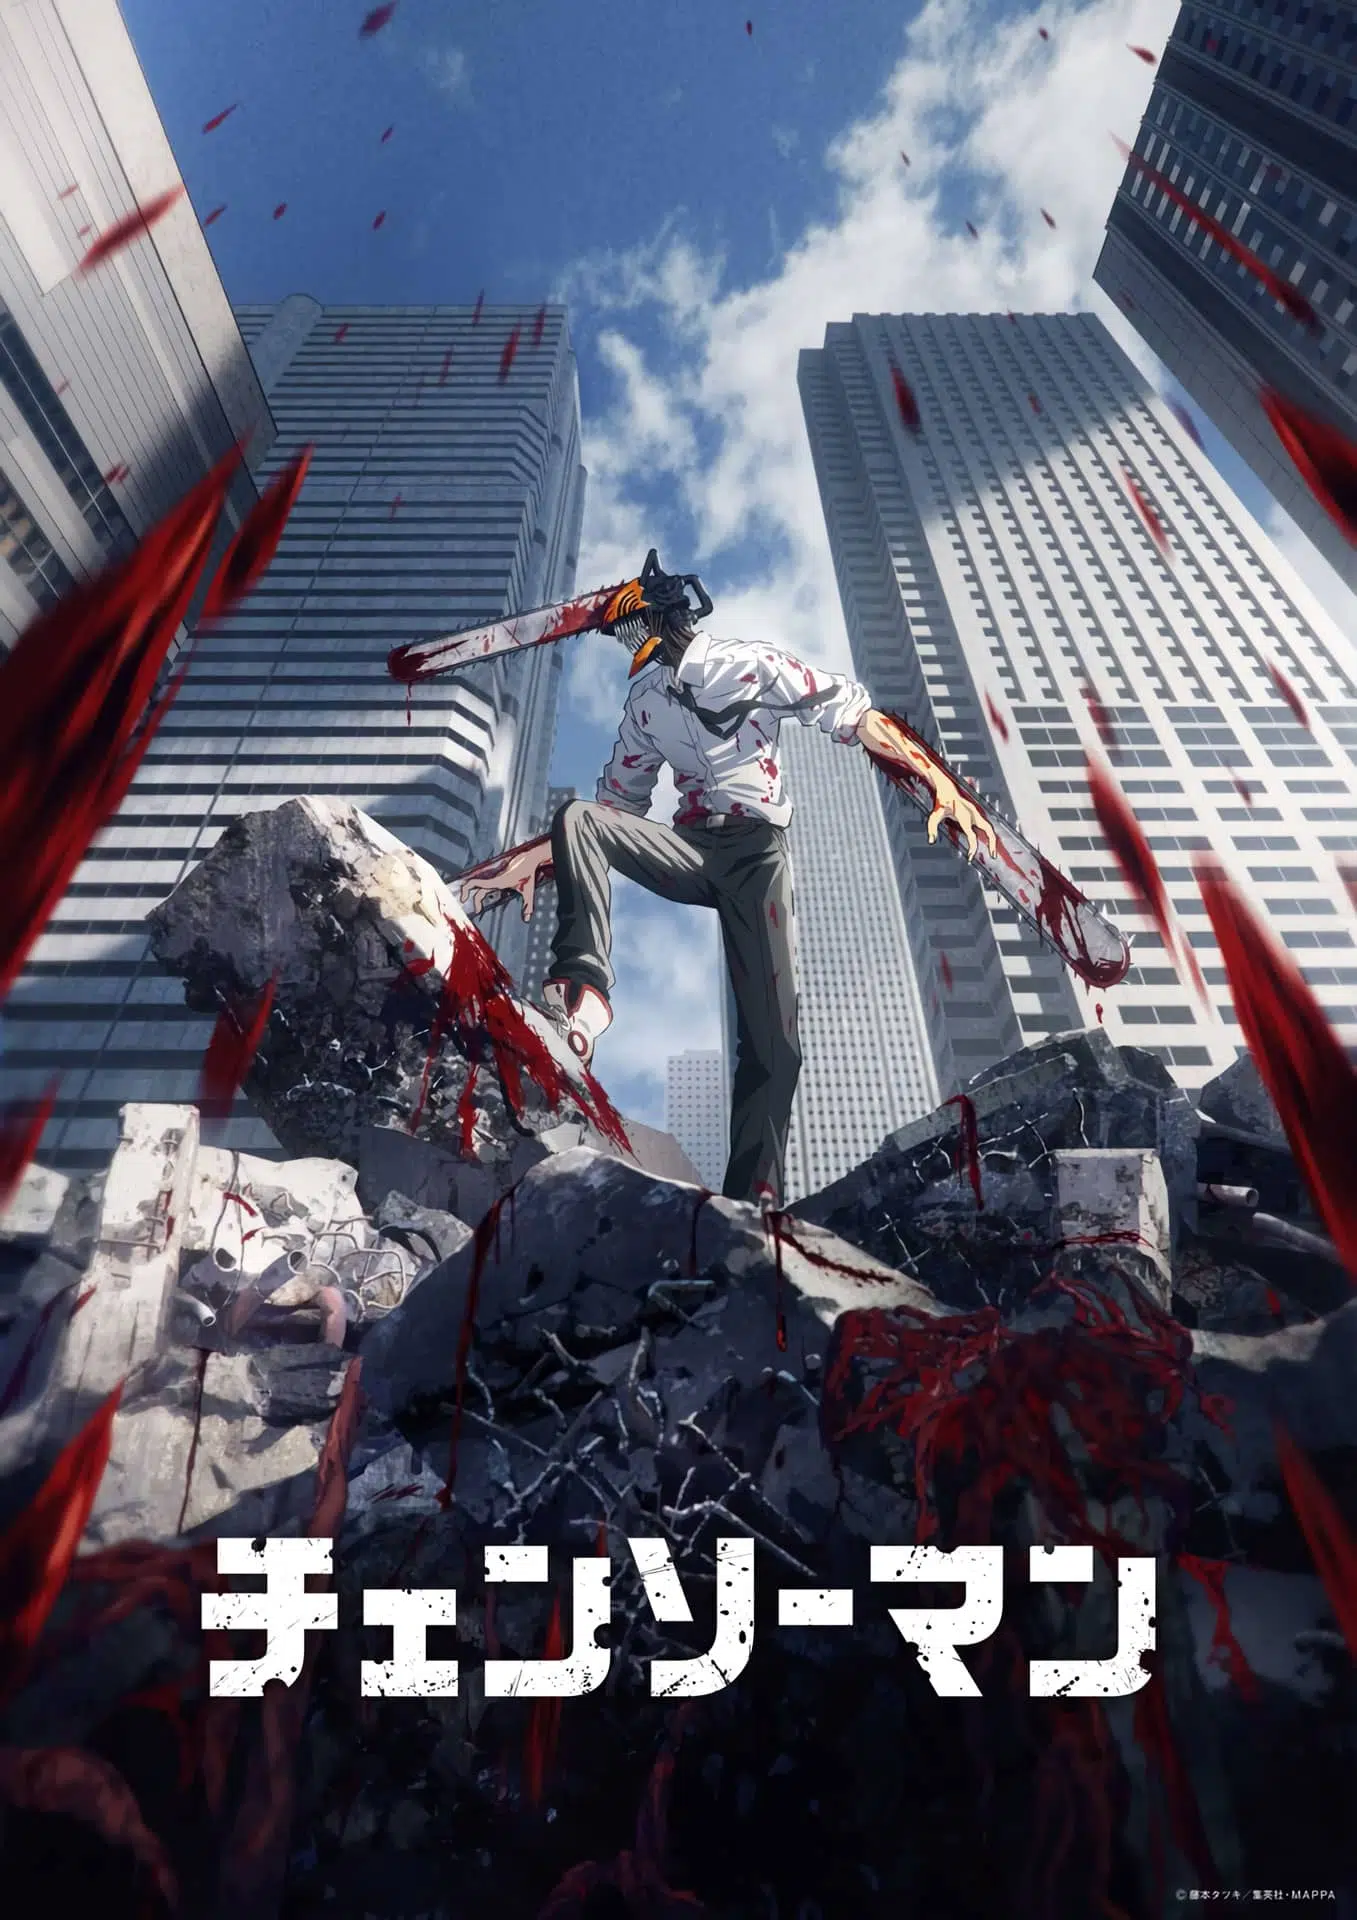 Chainsaw-Man-anime-visual, GamersRd